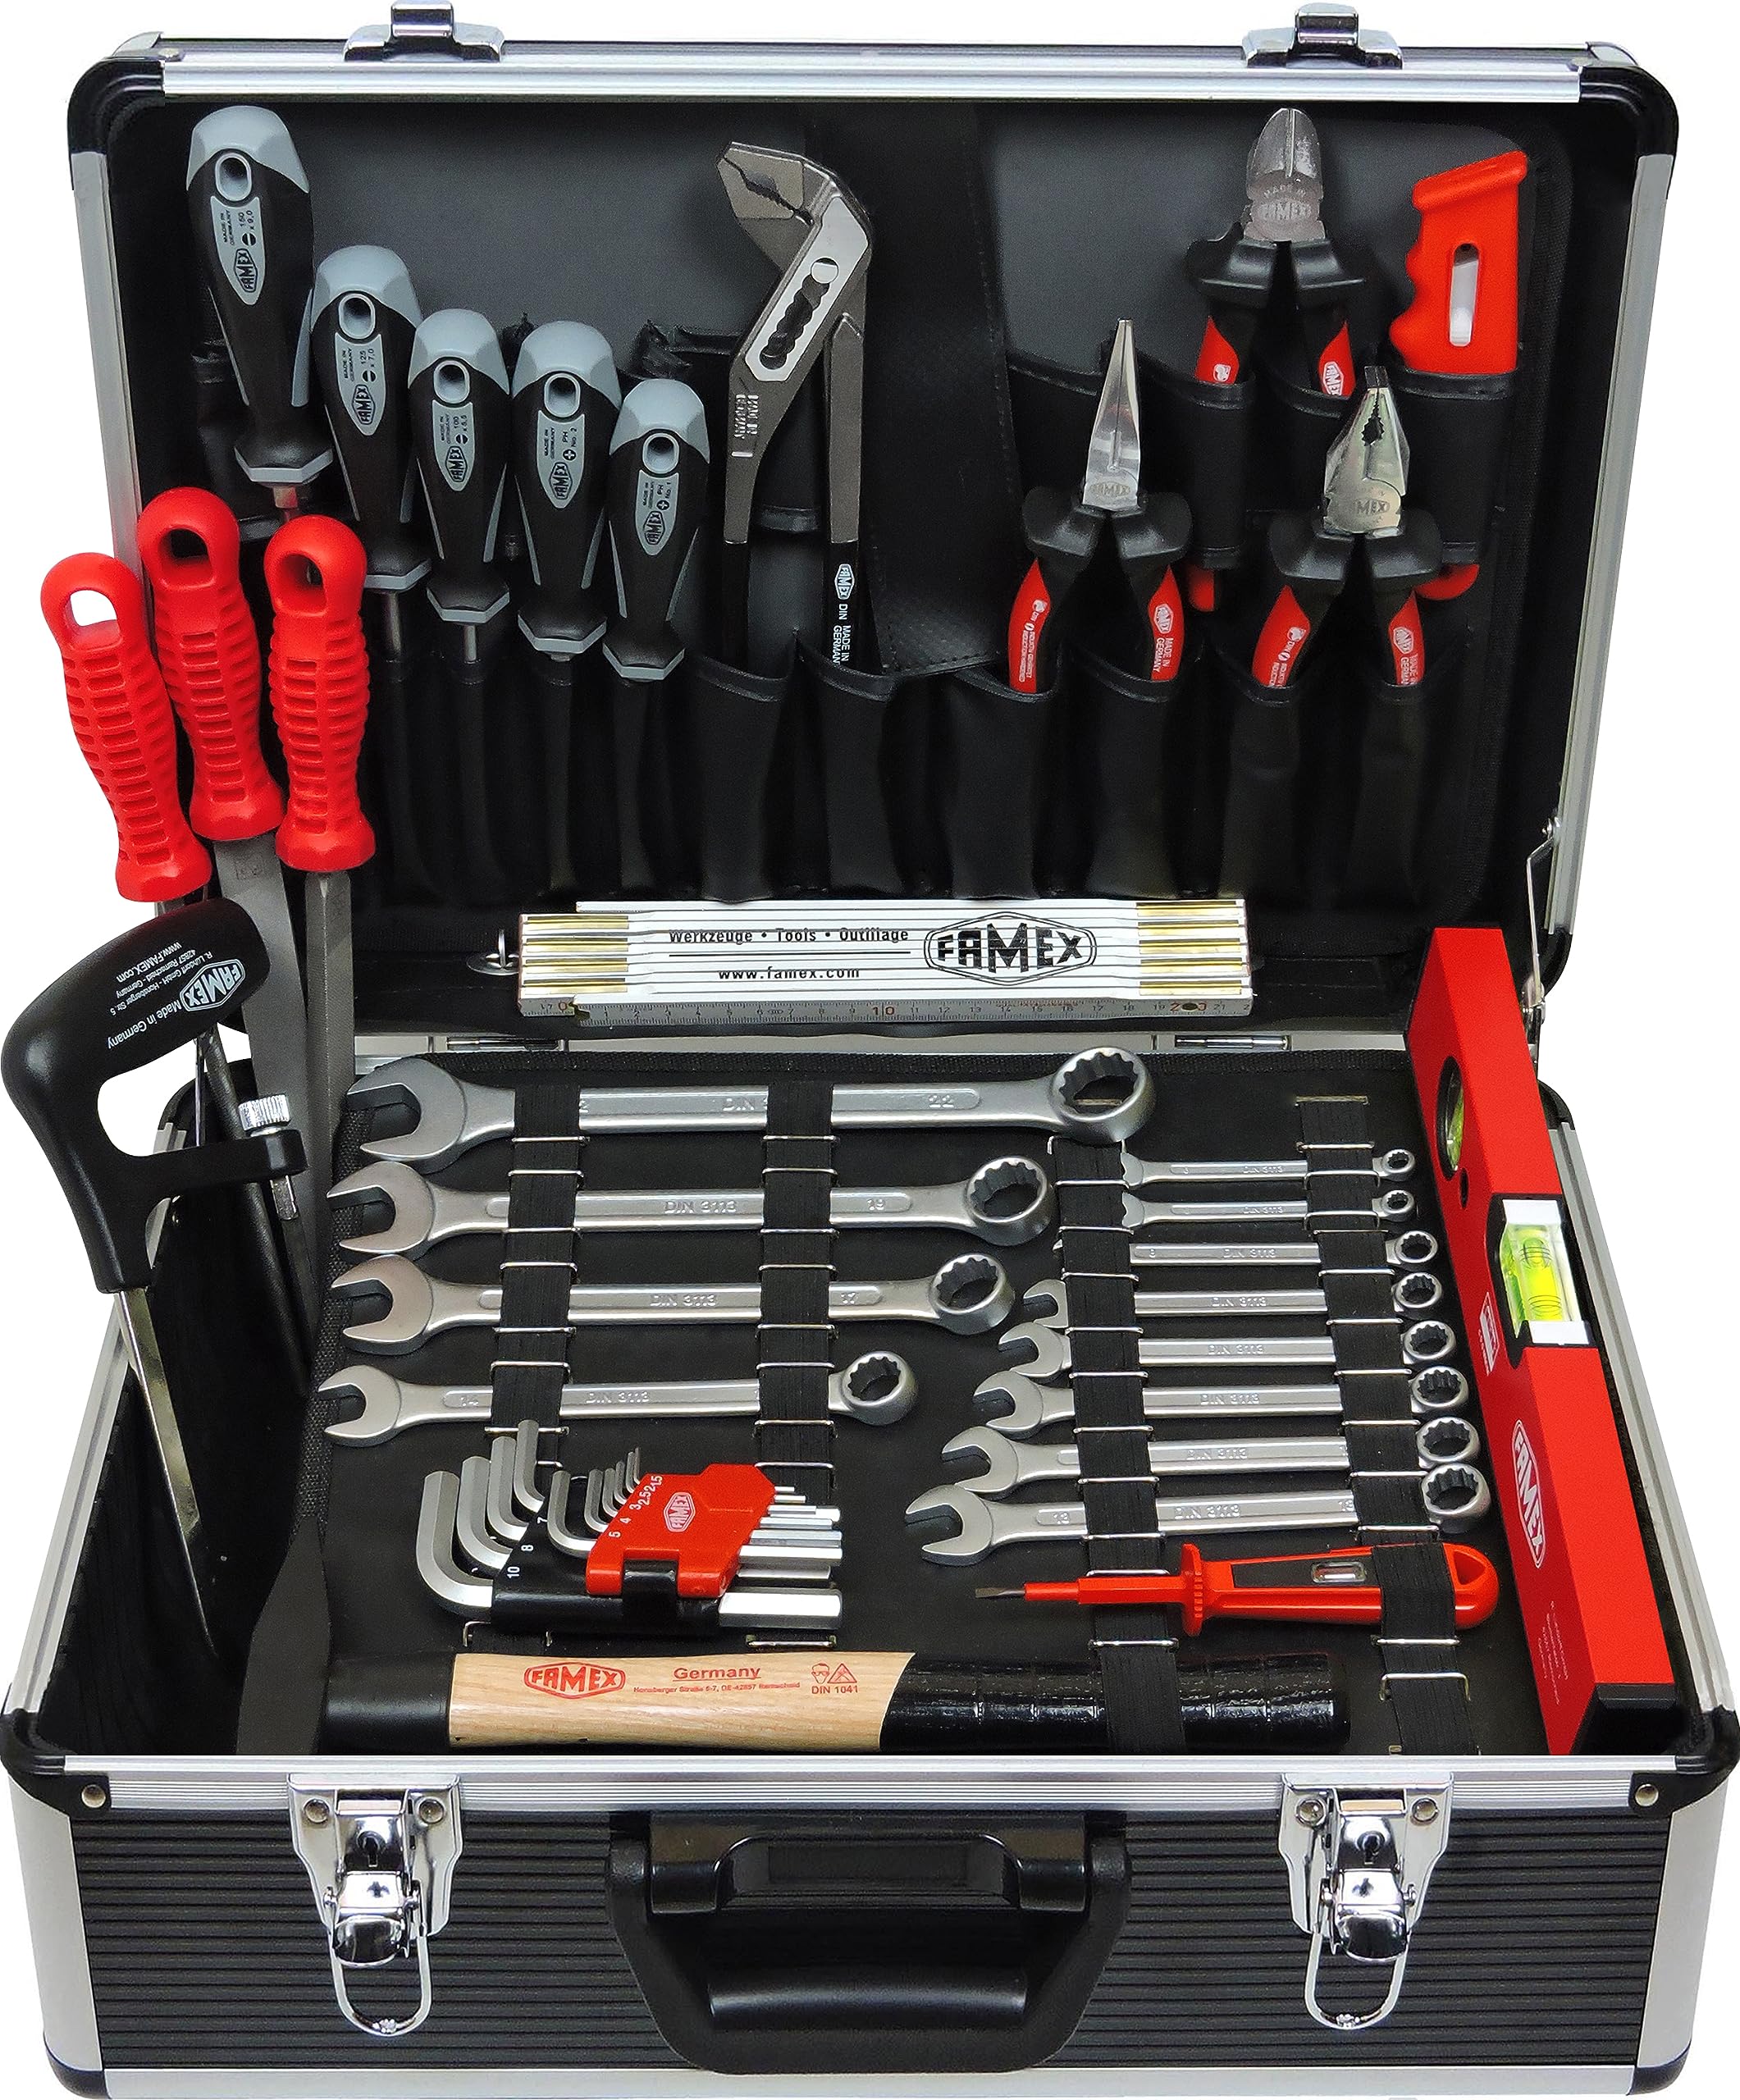 Famex 749-88 Profi Werkzeugkoffer gefüllt mit Werkzeug - Werkzeugkiste Werkzeugkasten befüllt - für den gewerblichen Einsatz